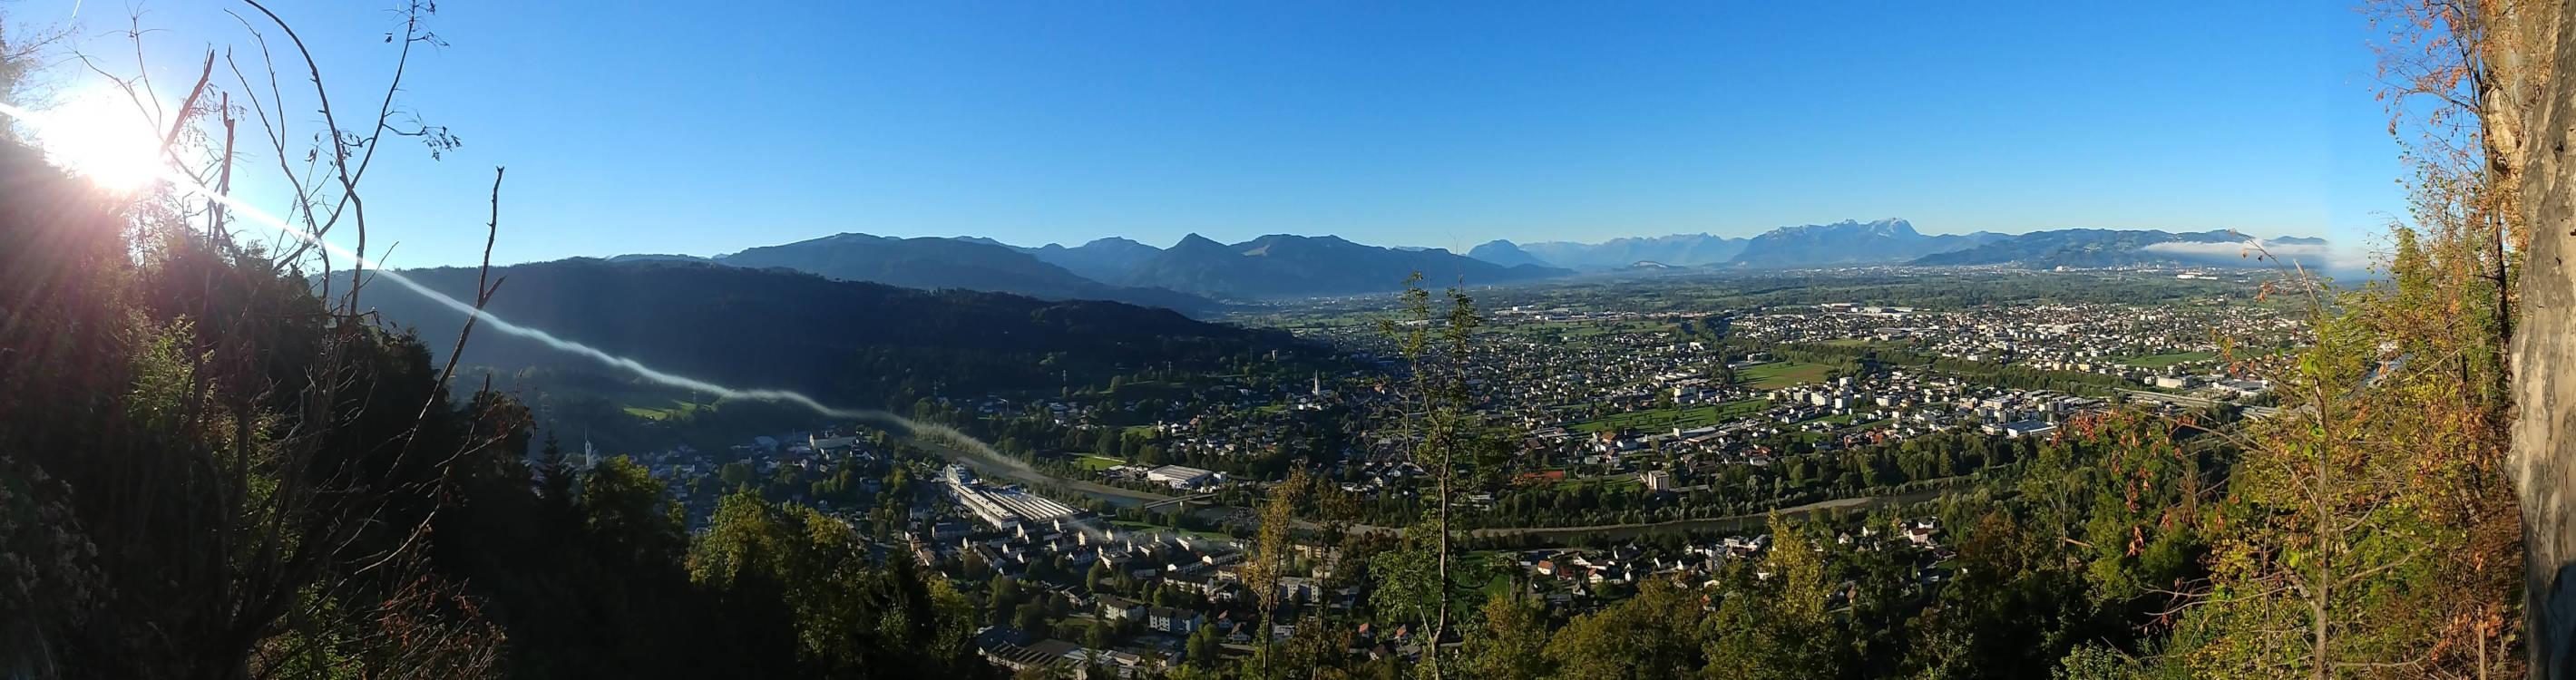 Blick über das Rheintal vom Känzele Klettersteig.